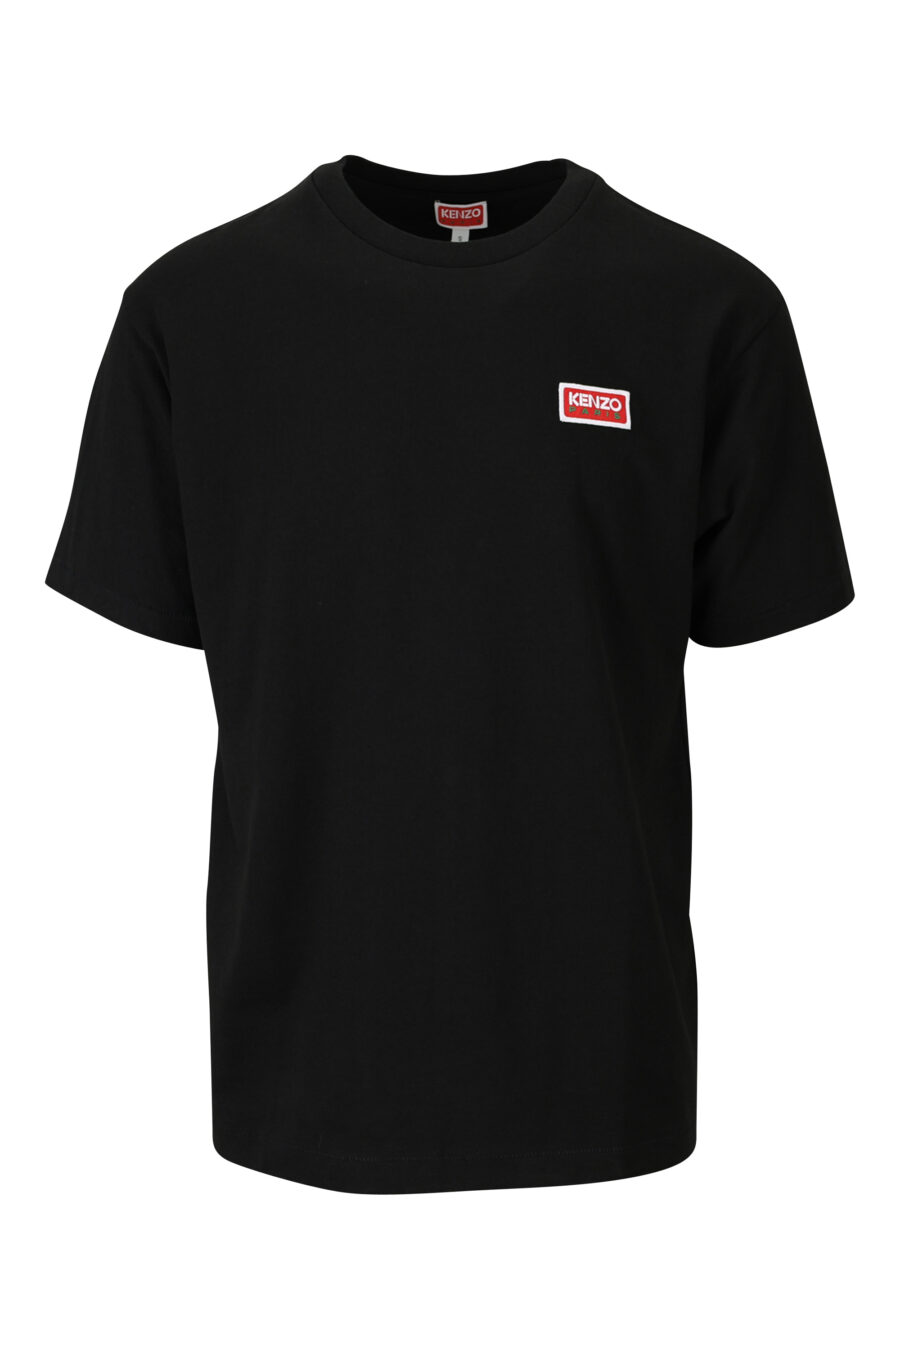 T-shirt noir avec petit logo "kenzo paris" - 3612230542990